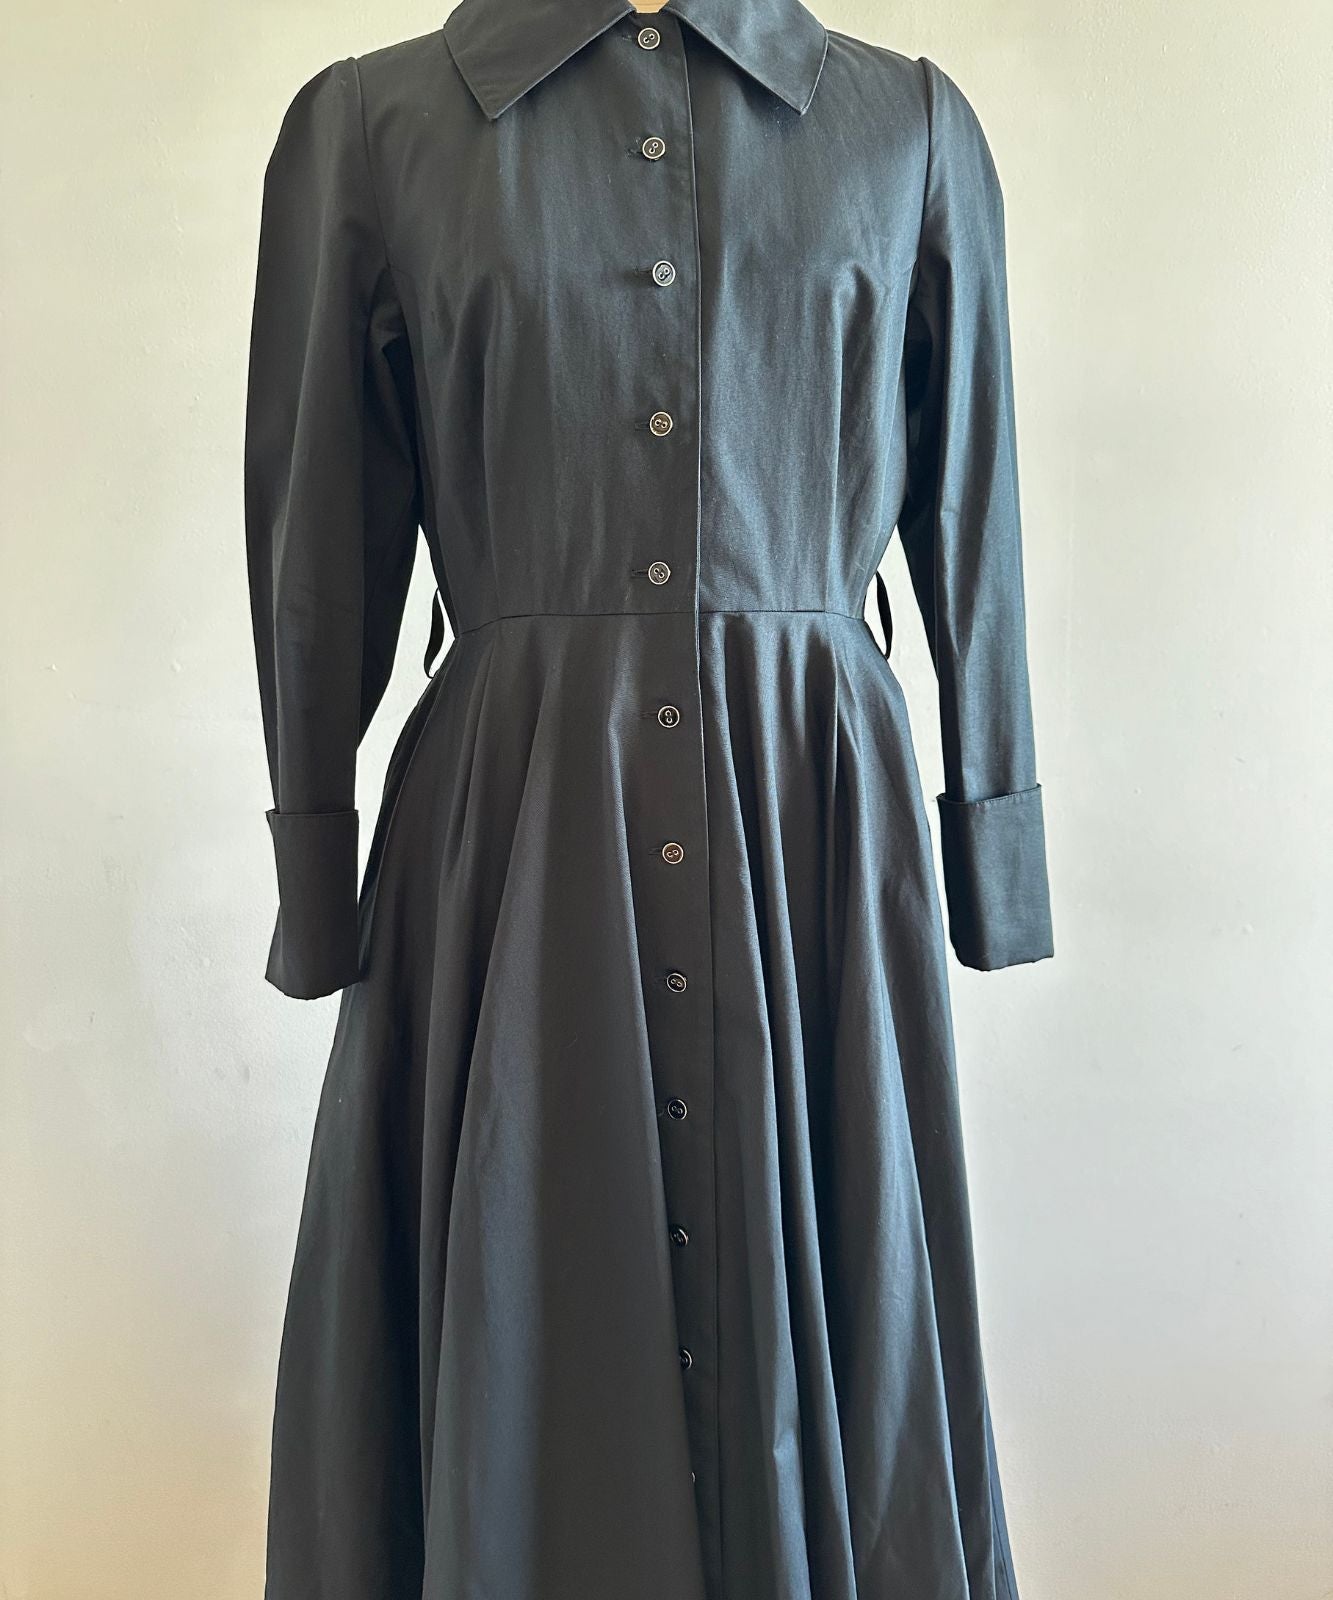 ≪在庫販売≫【THE Dress #18】big COLLAR Black Button dress(ビッグカラーブラックボタンドレス) 在庫販売 / ブラック / M+サイズ